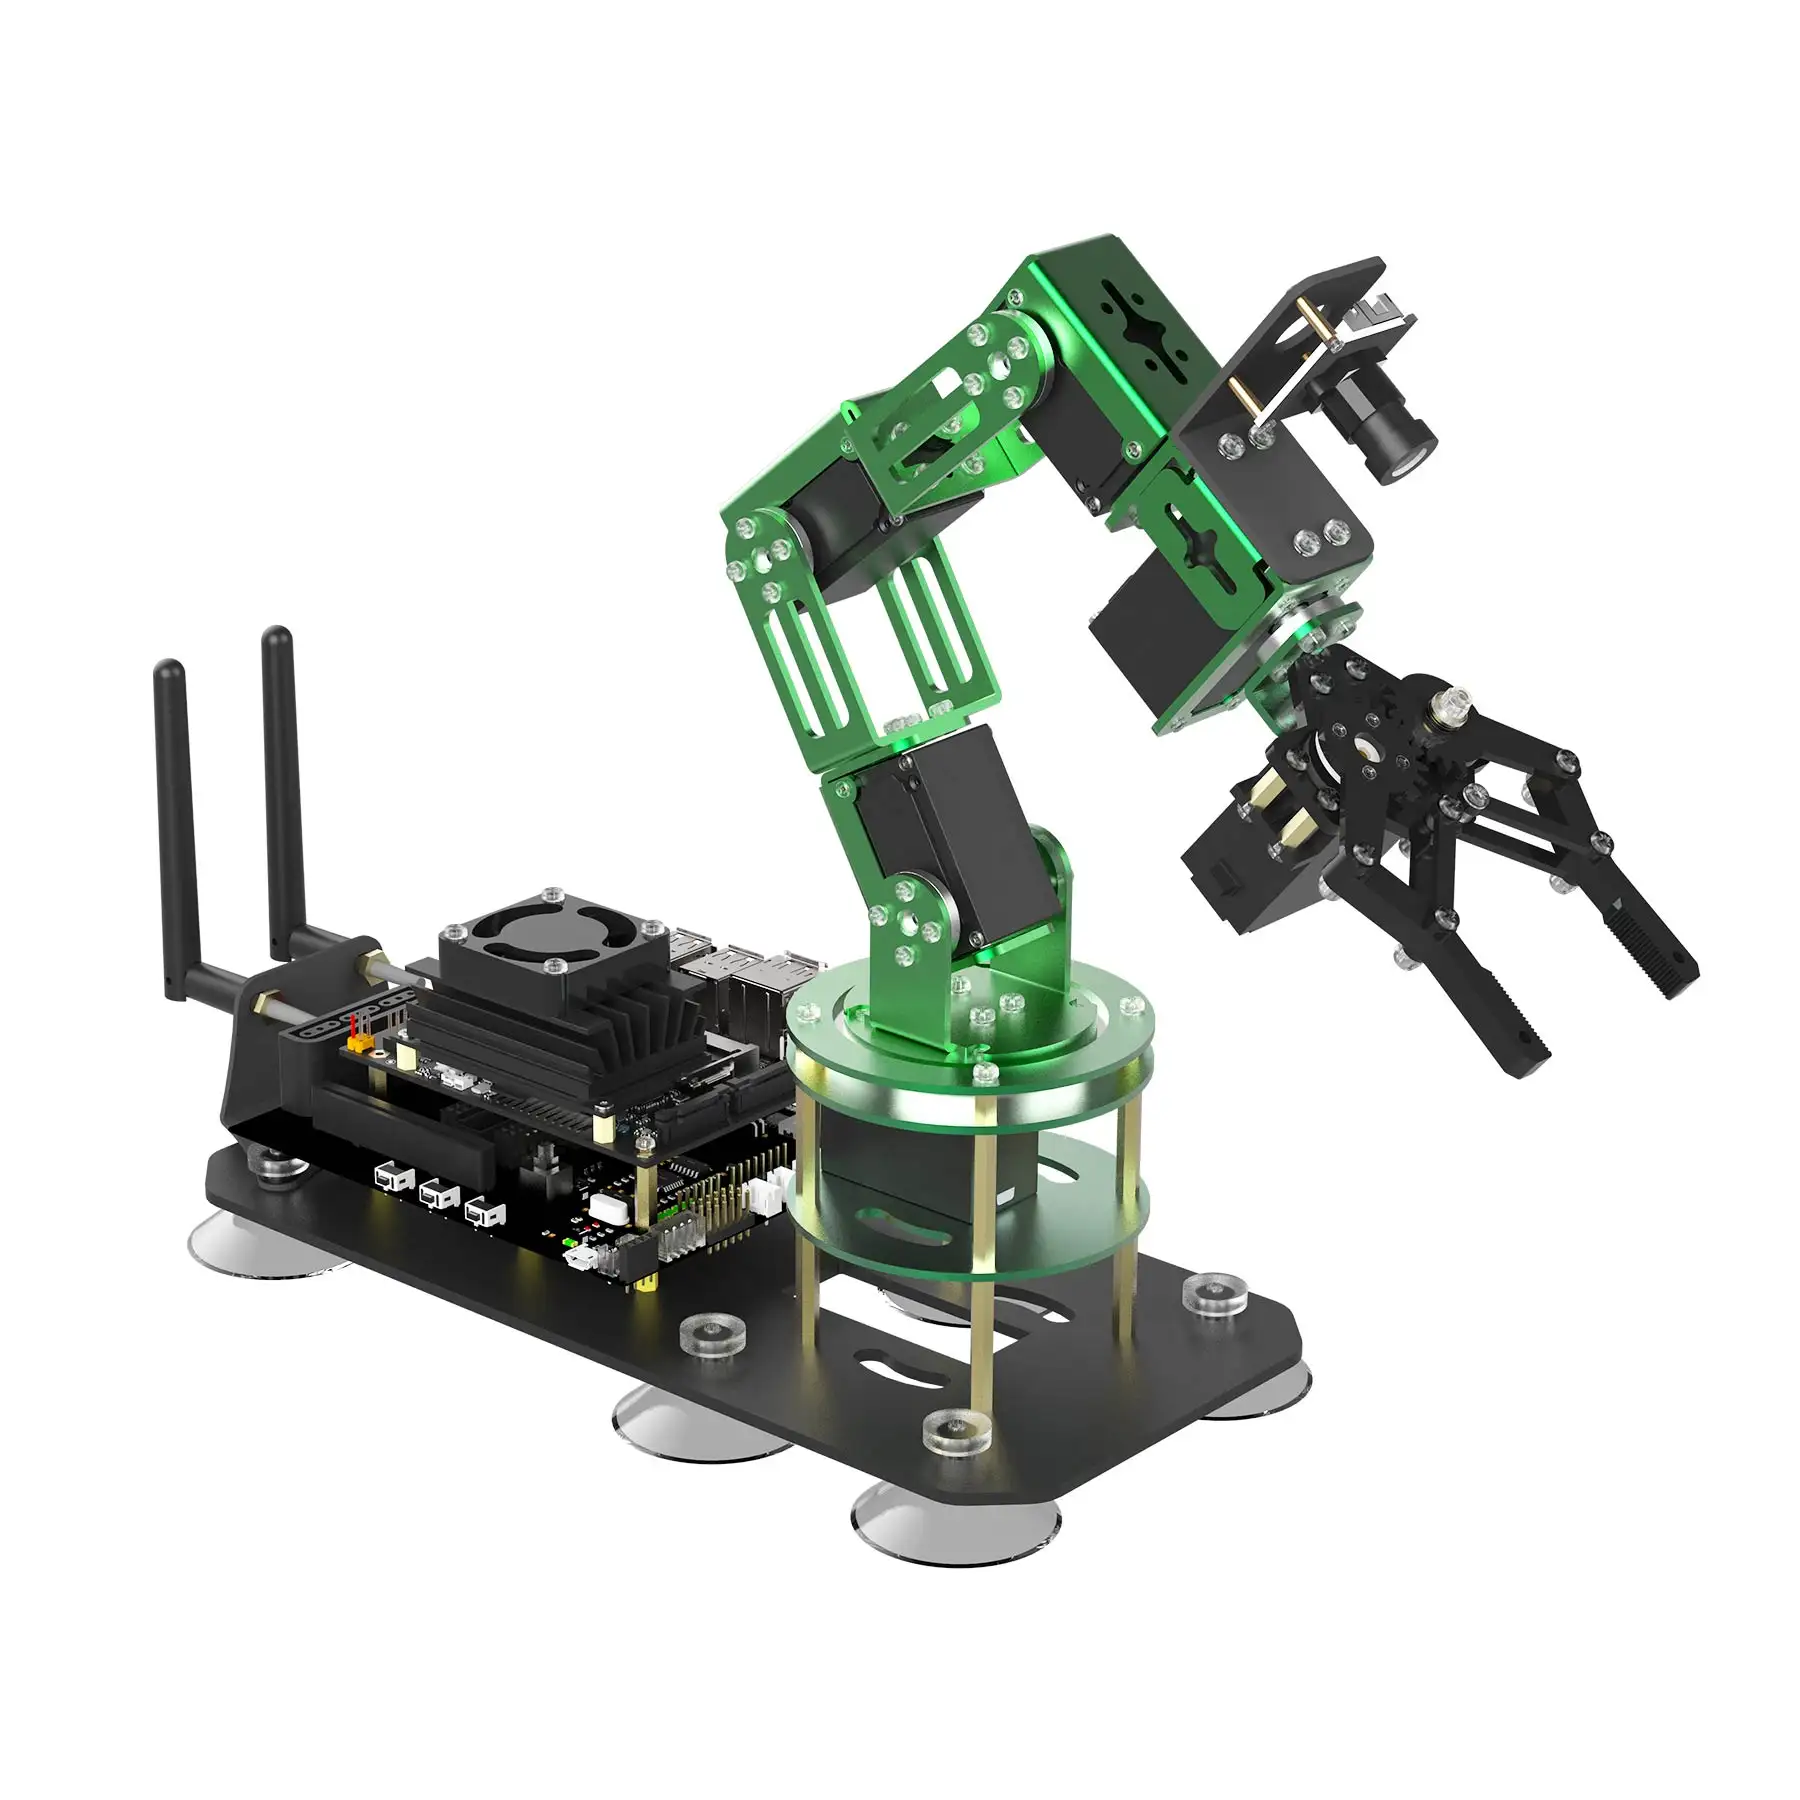 Yahboom AI Ros robot con brazo robot 6 ejes compatible con programación Python y kit de aprendizaje de reconocimiento facial